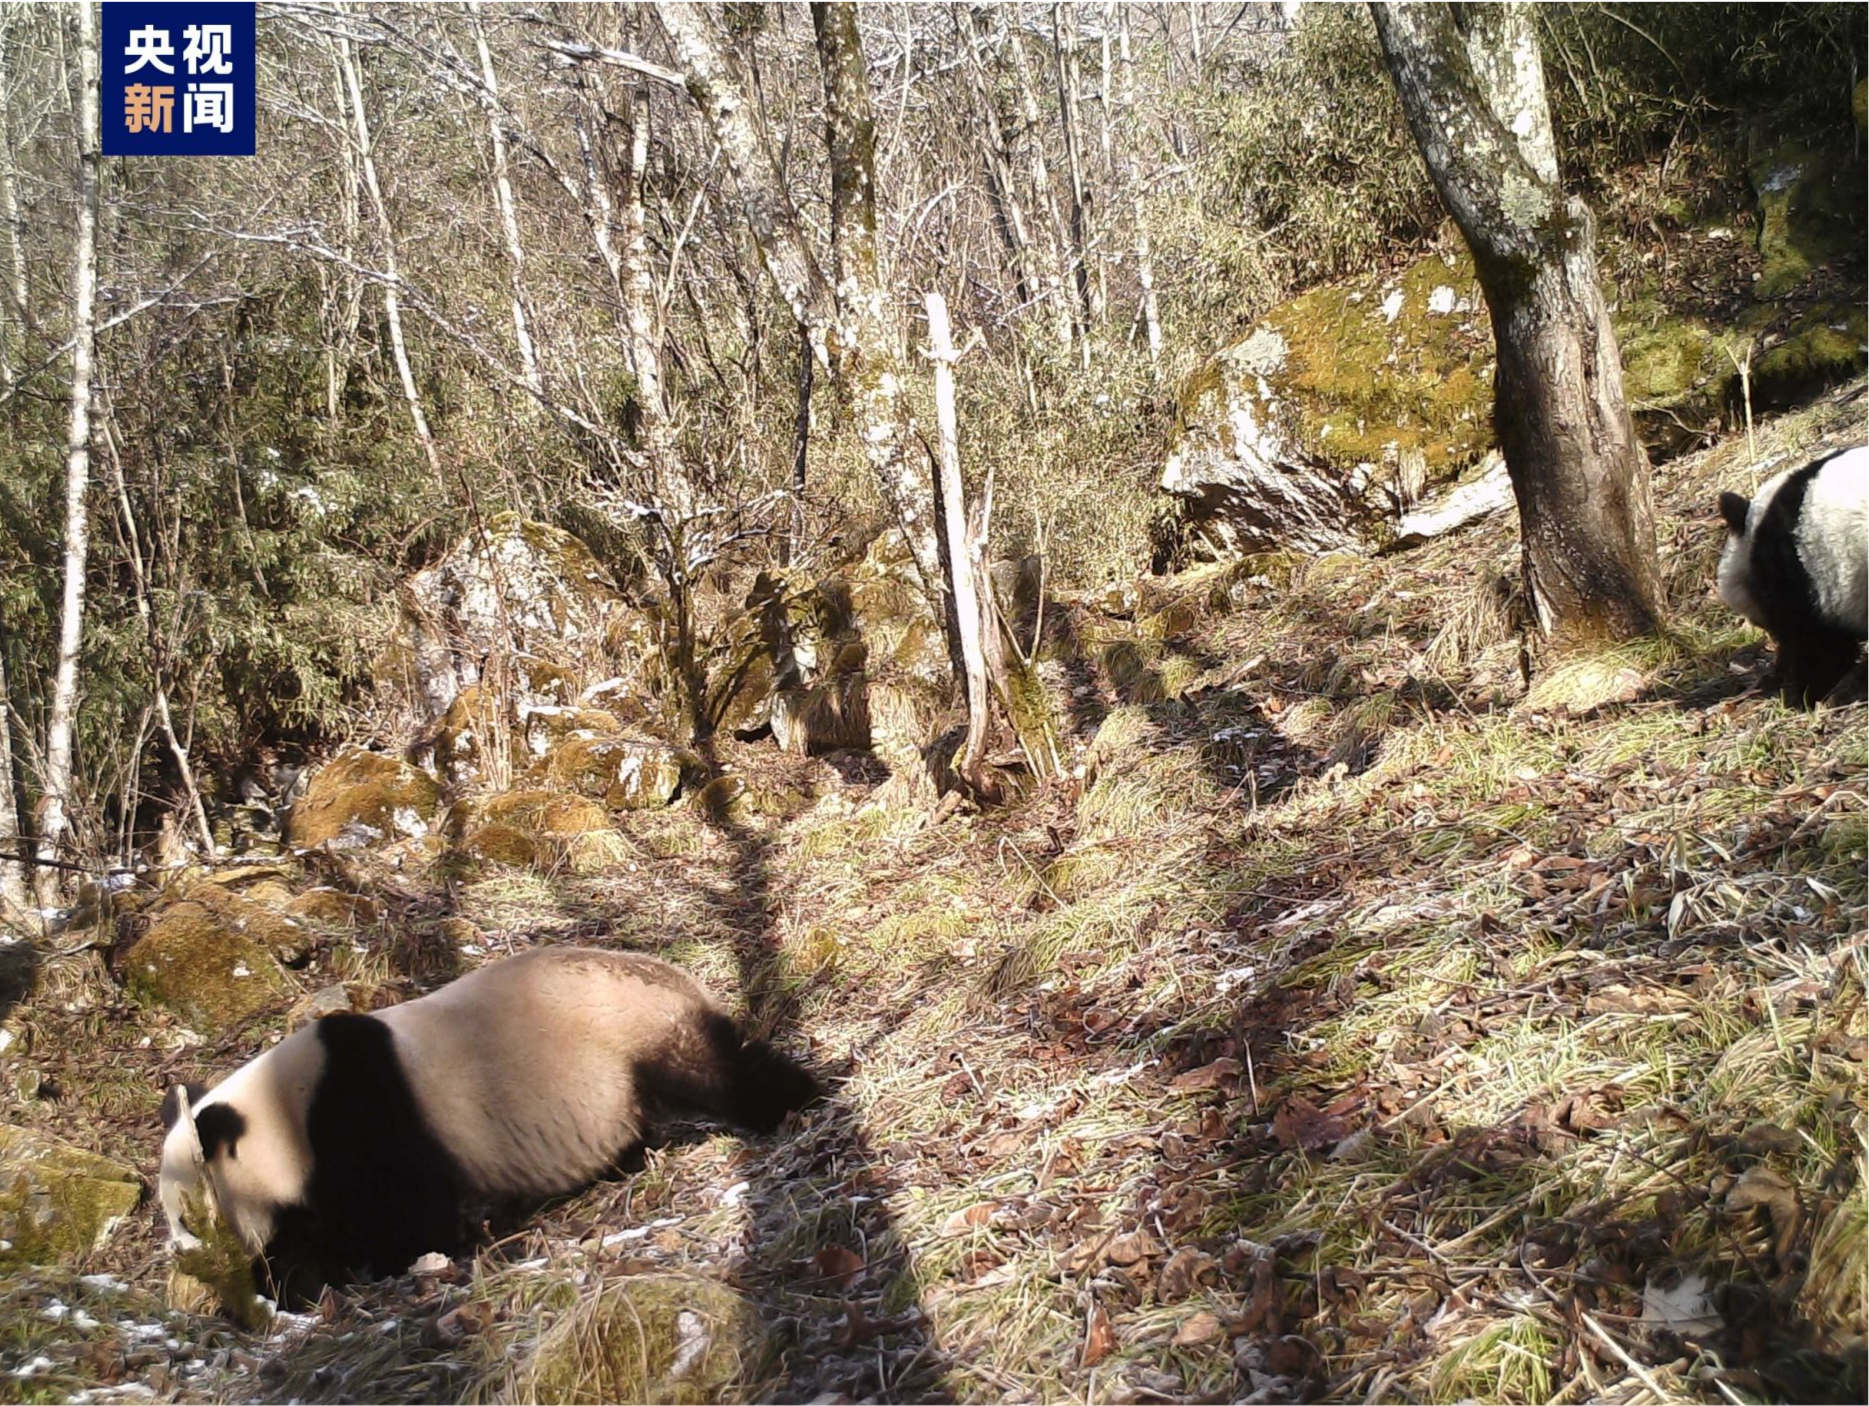 陕西太白山拍到野生大熊猫母子同框画面